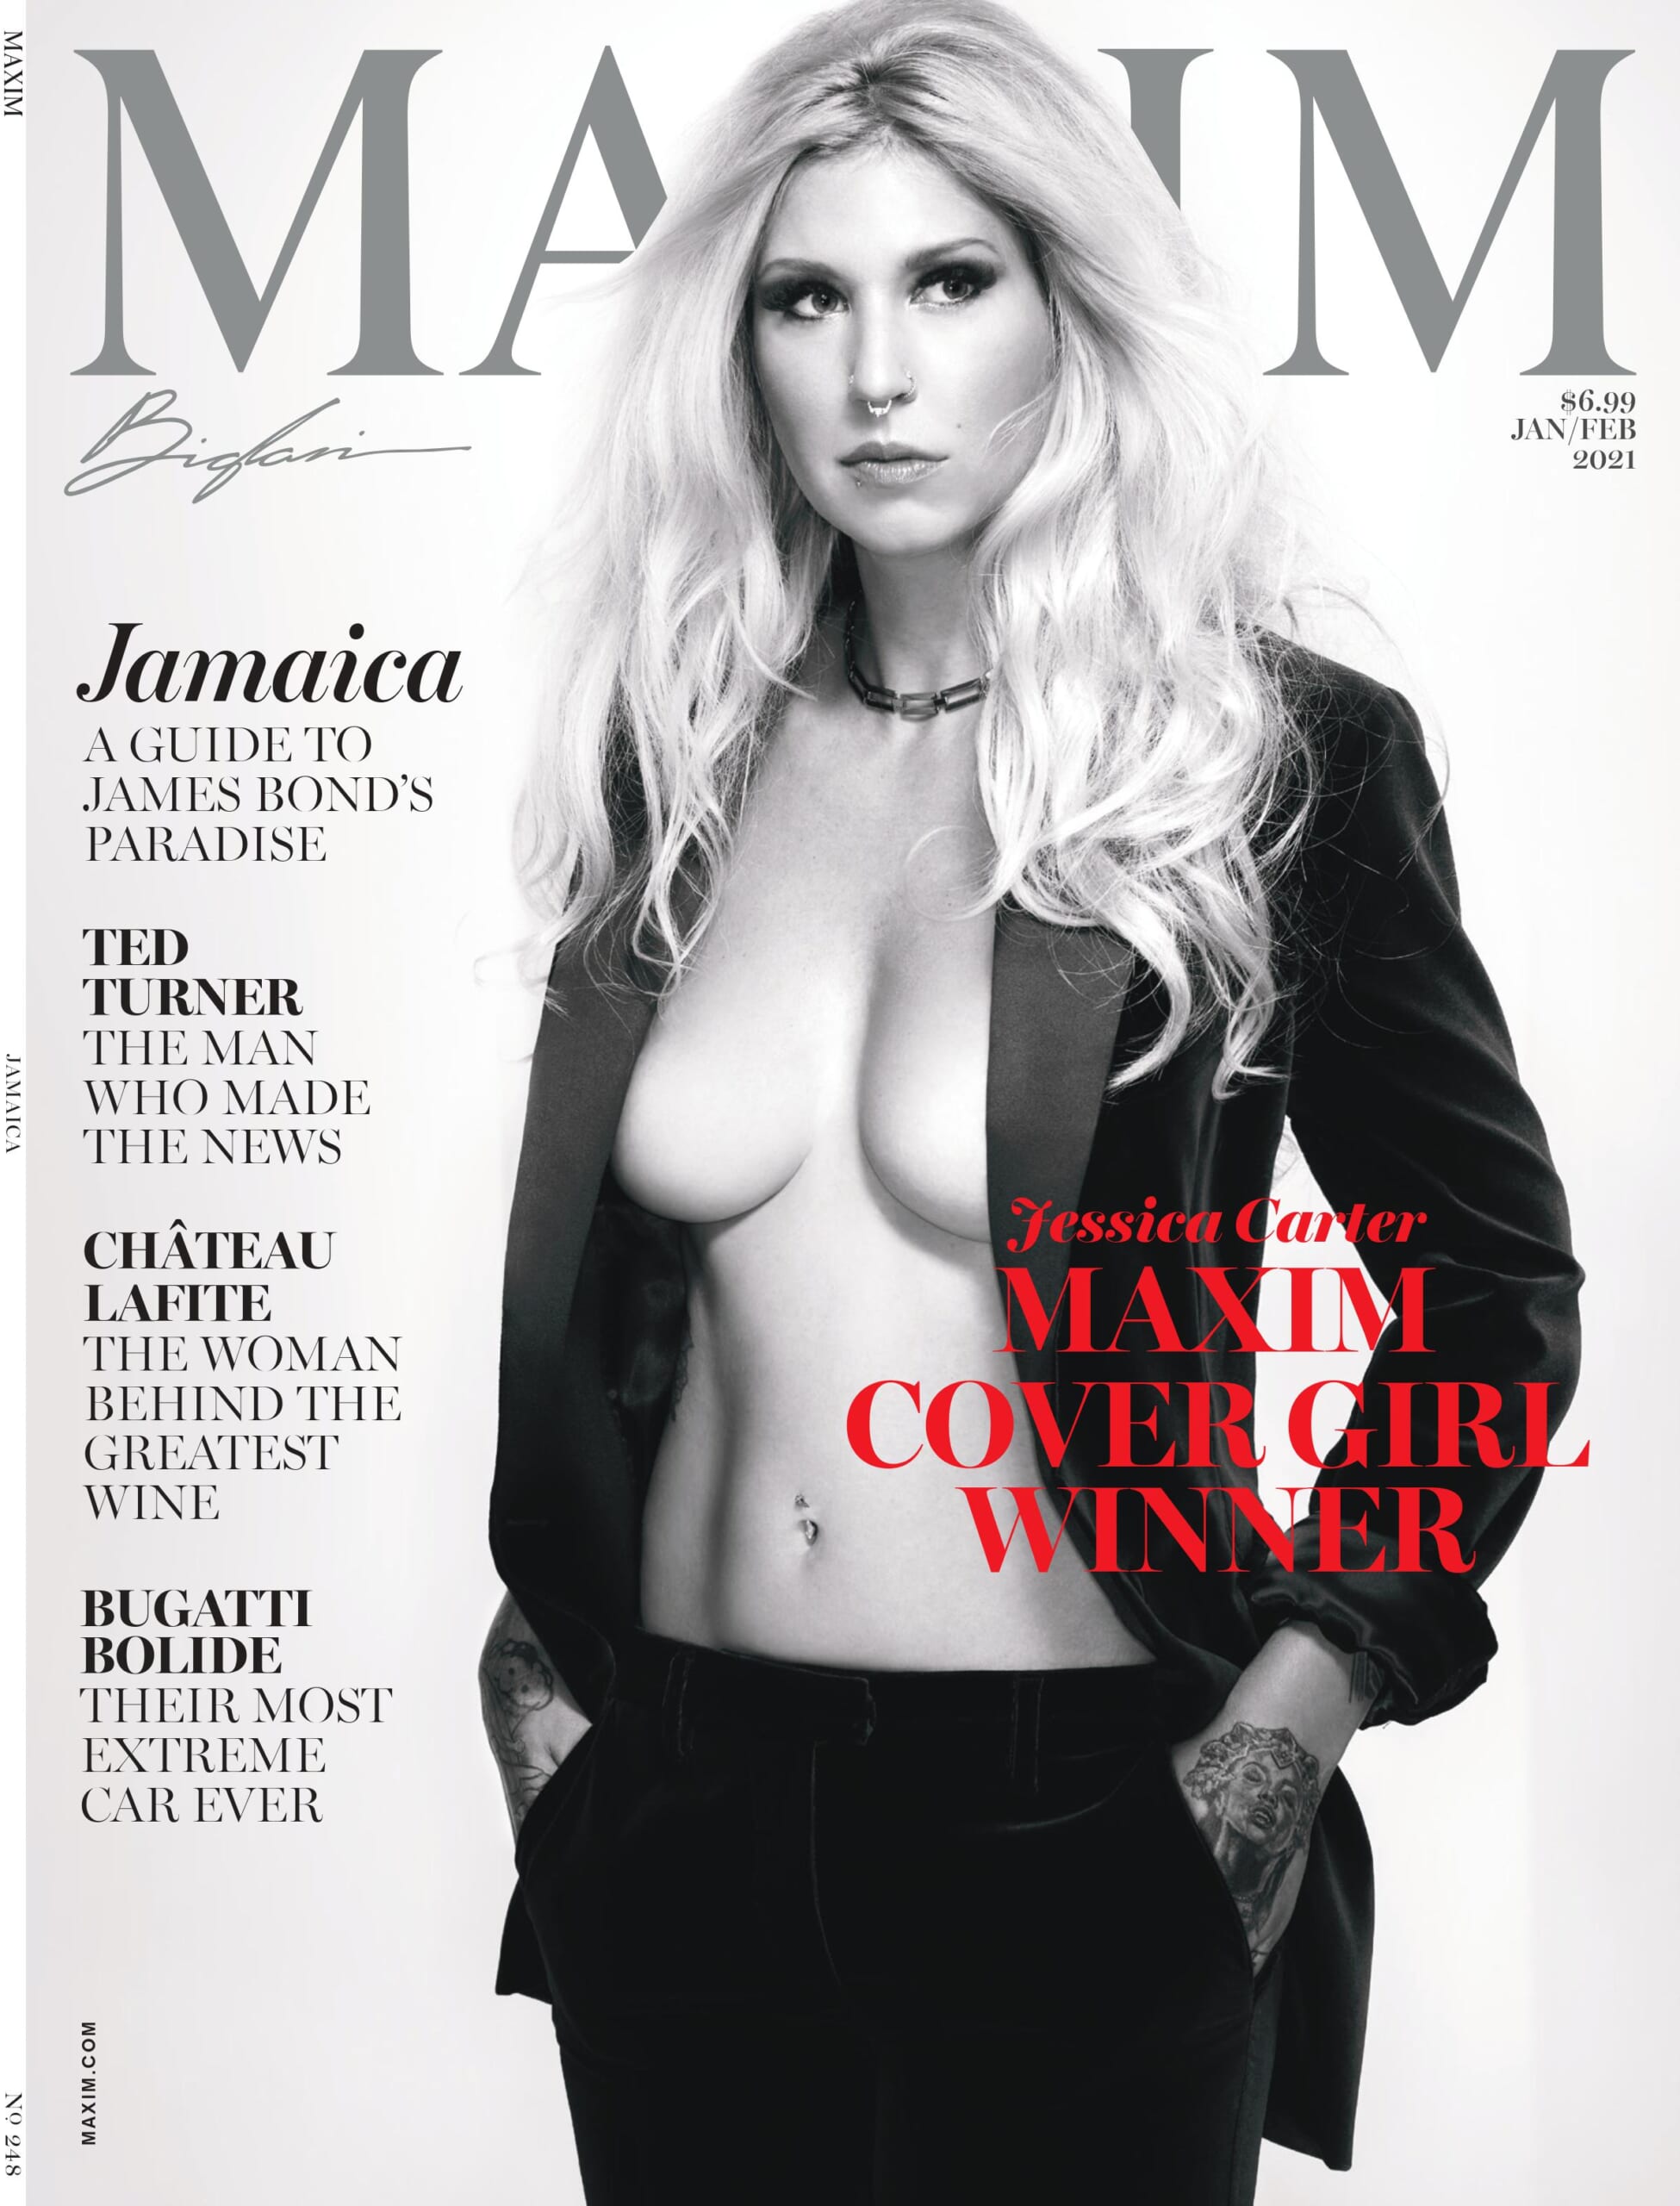 Maxim covergirl 2021